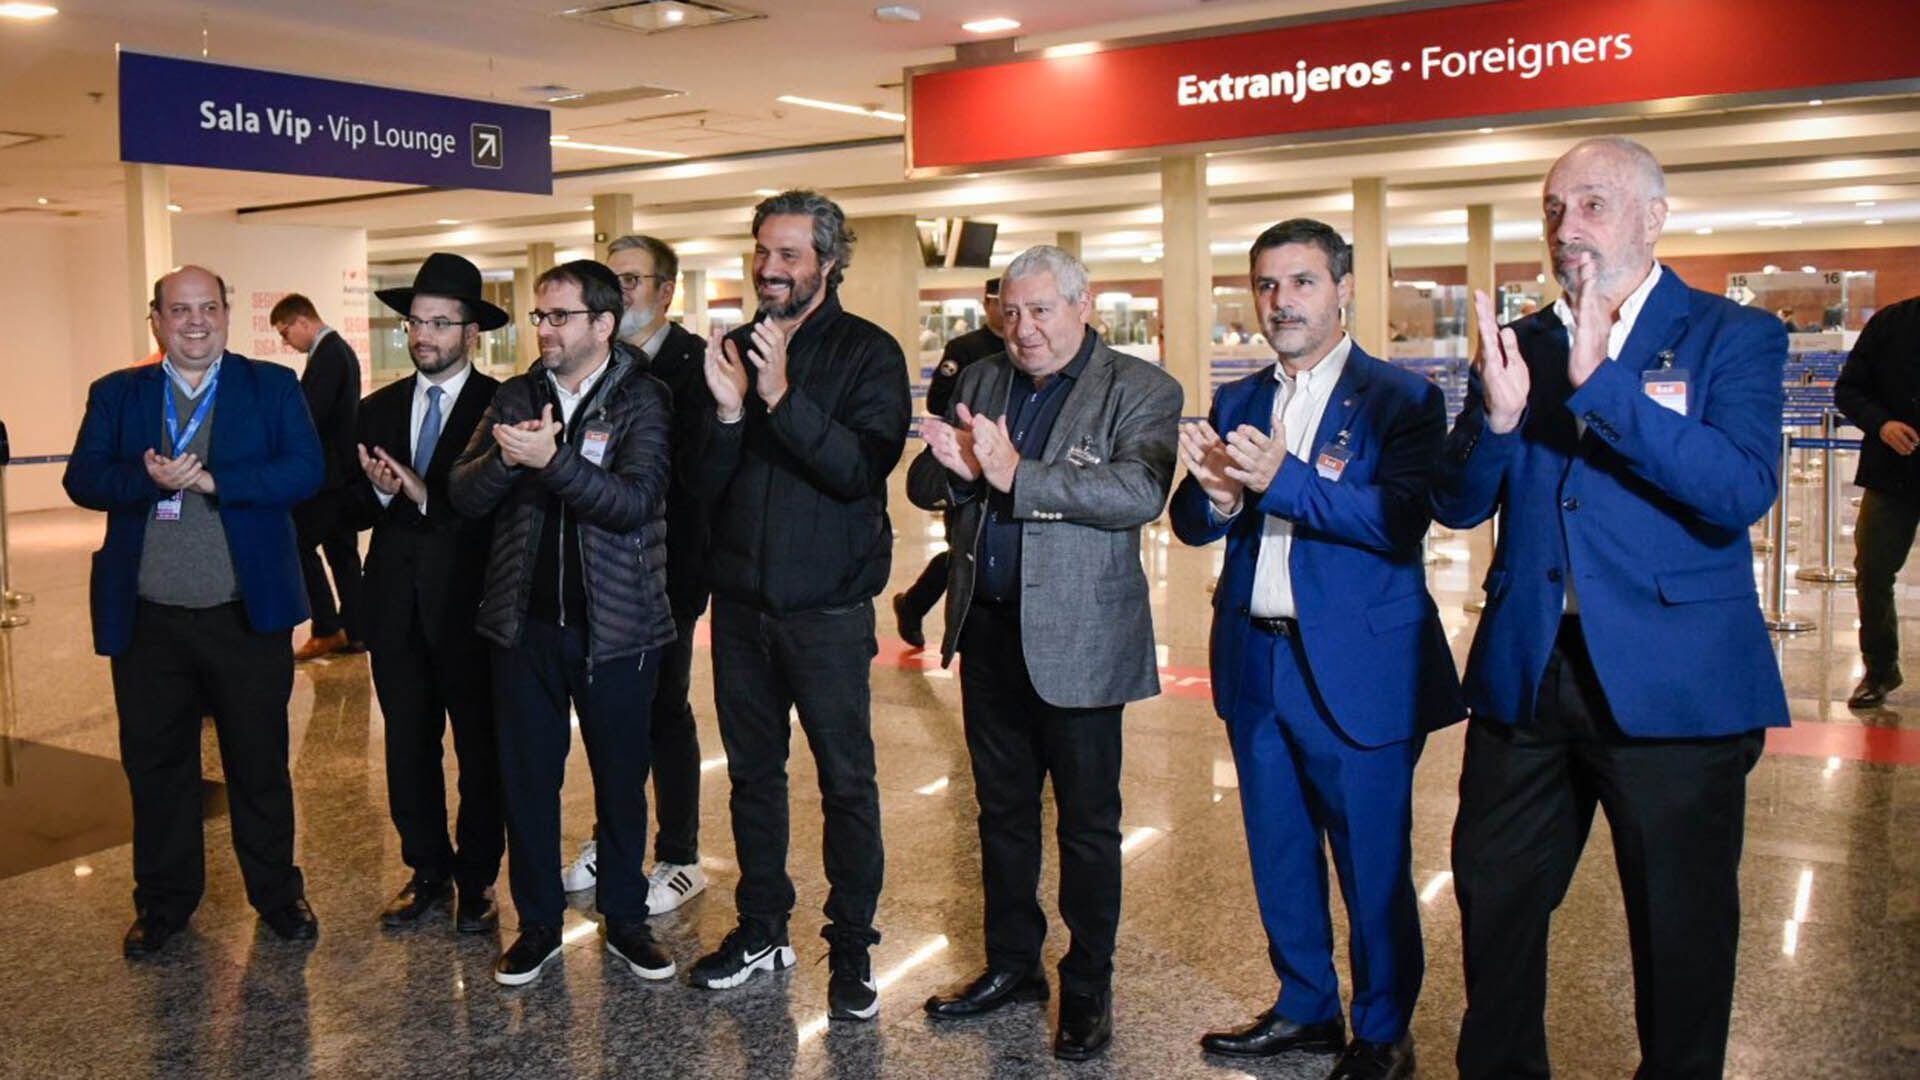 El canciller Santiago Cafiero junto a representantes de distintas organizaciones judías le dieron la bienvenida a los jóvenes en el aeropuerto de Ezeiza